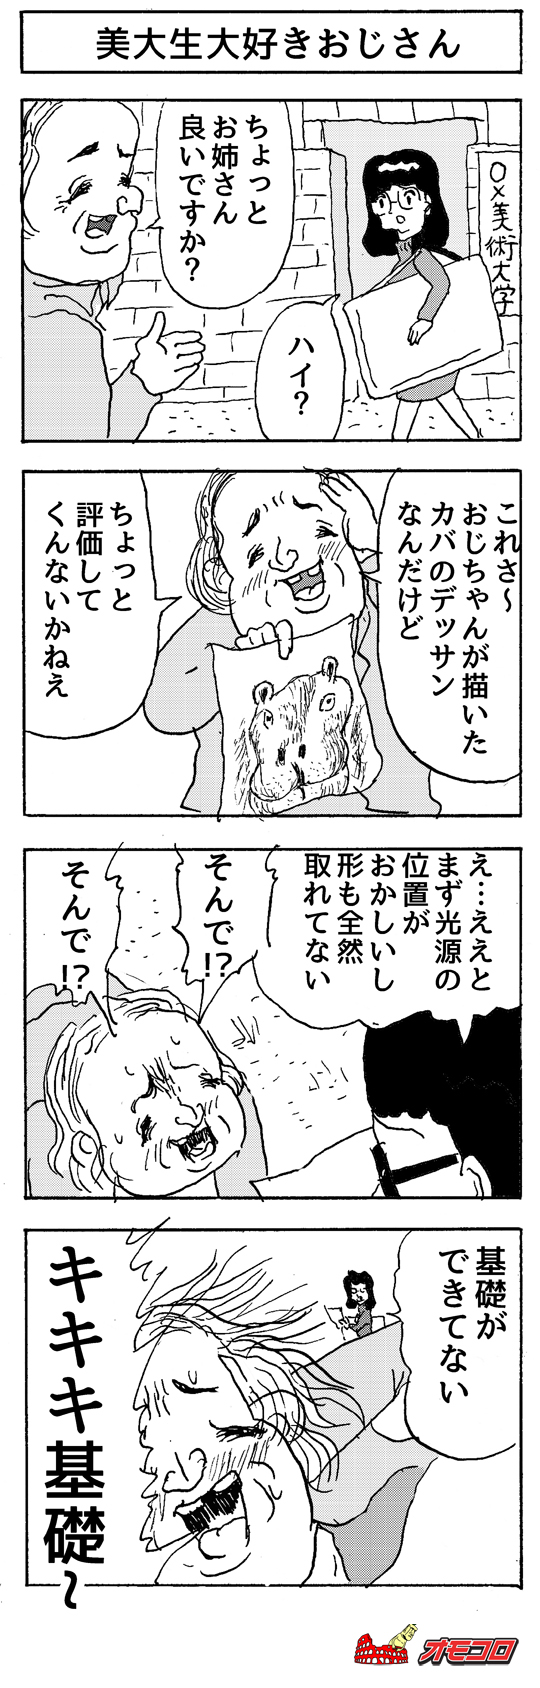 【4コマ漫画】美大生大好きおじさん